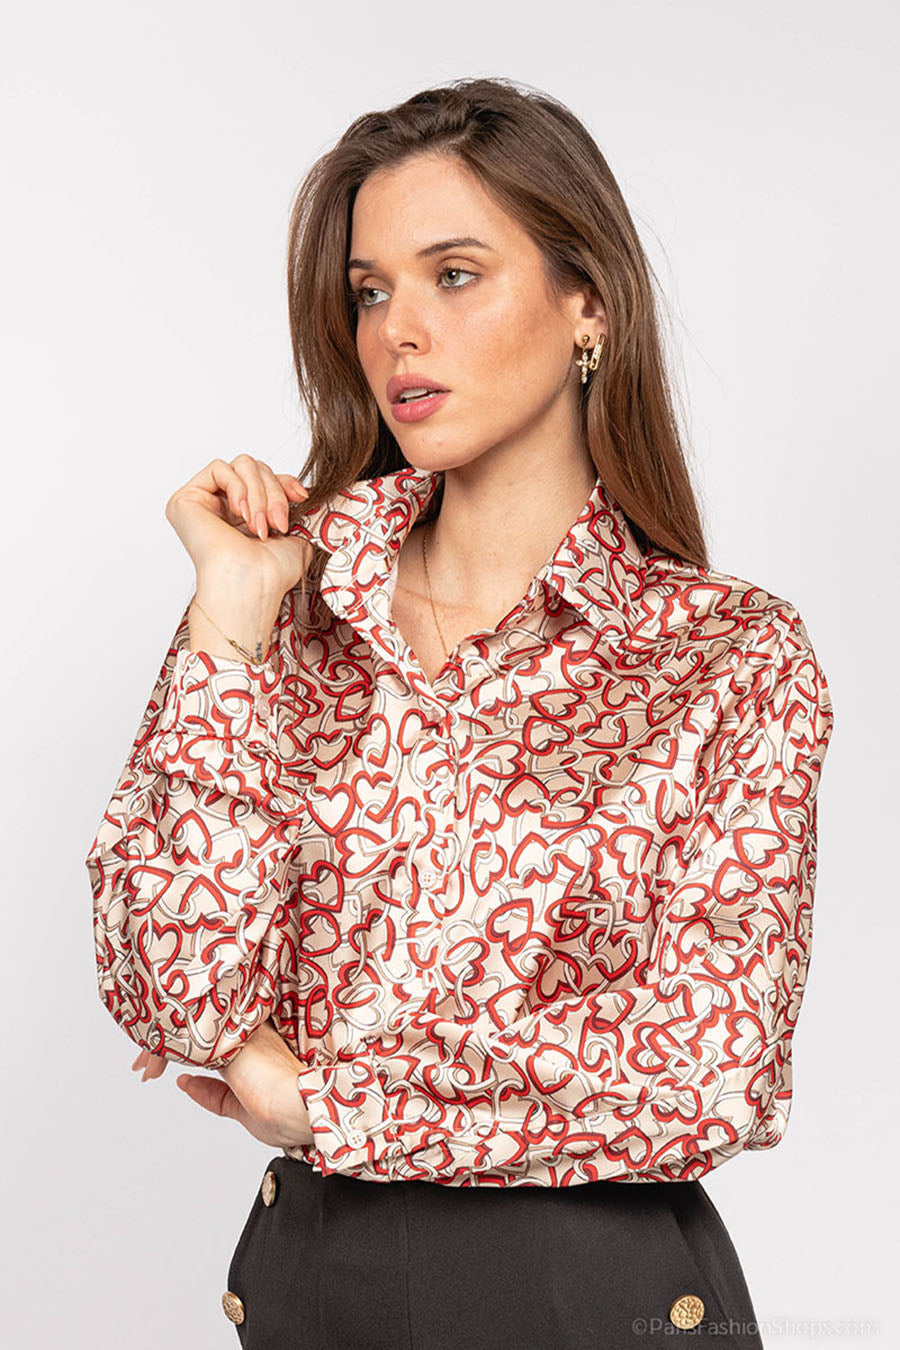 Γυναικείο πουκάμισο Kelani, Μπεζ/Κόκκινο 2